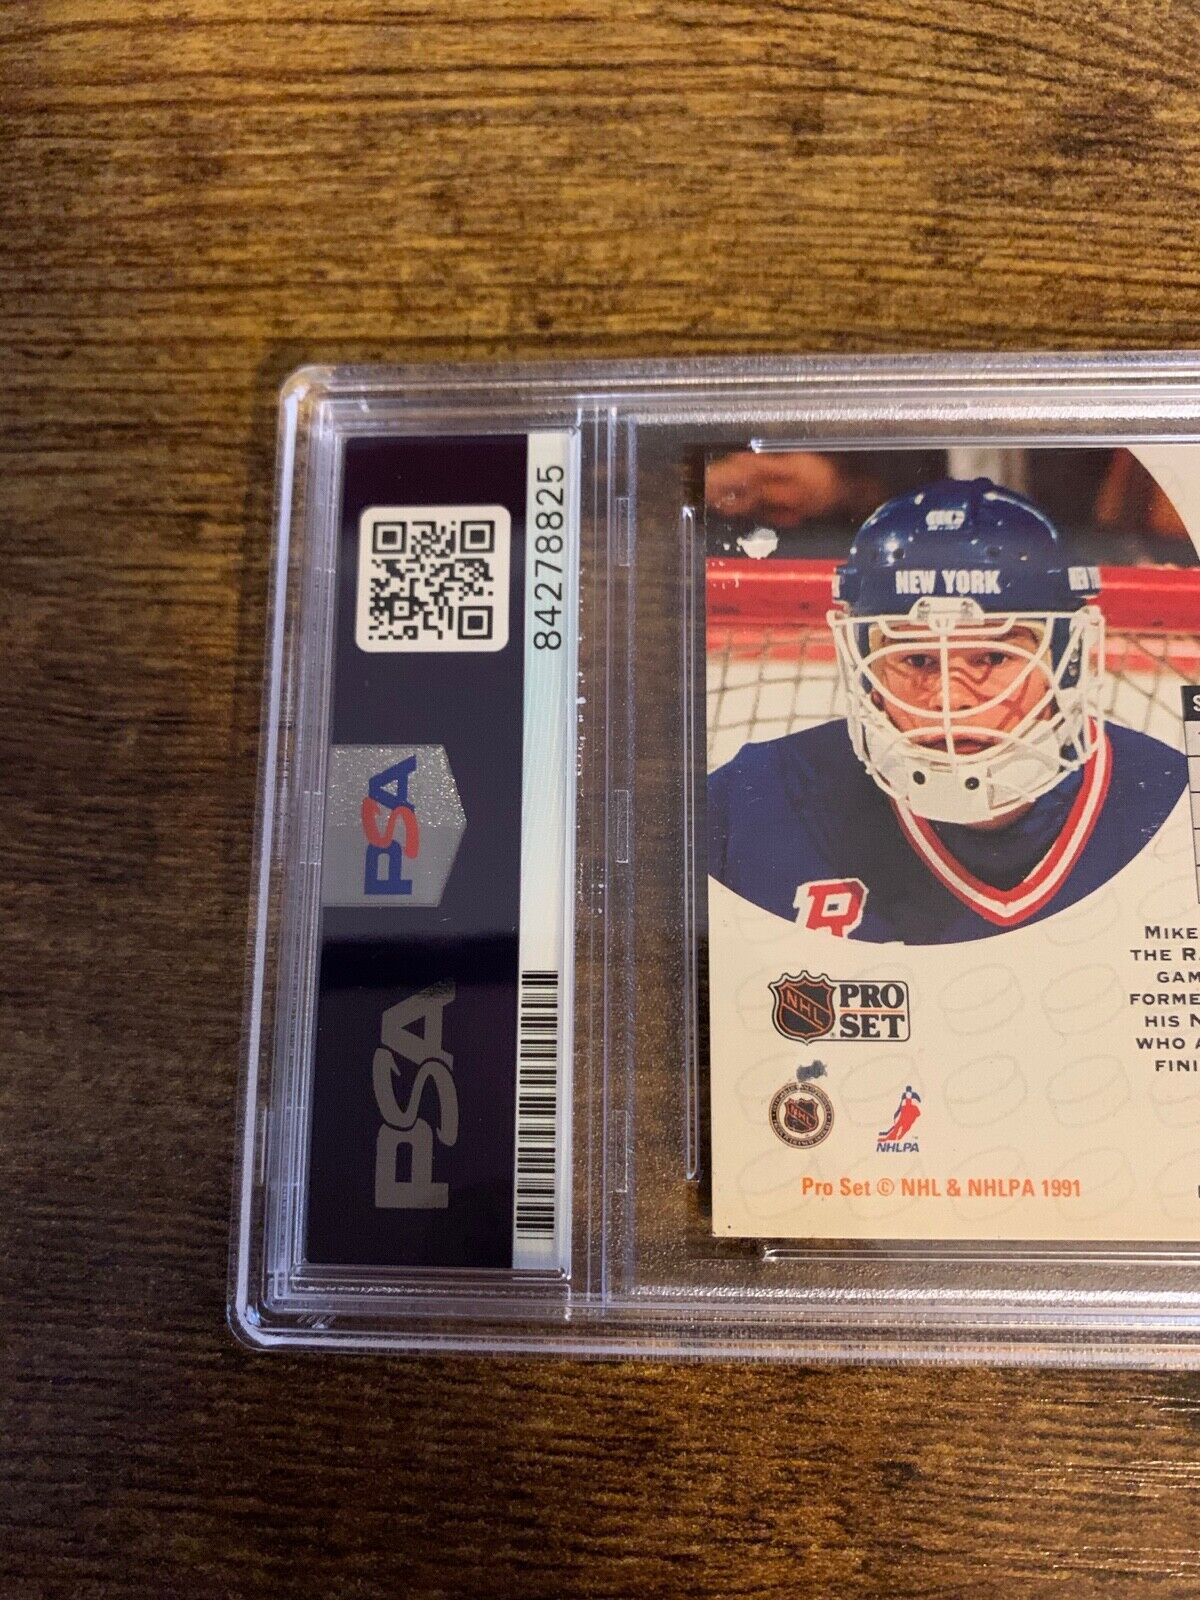 Mike Richter Autographed Signed 1990/91 NHL Pro Set Card PSA Certified Slabbed